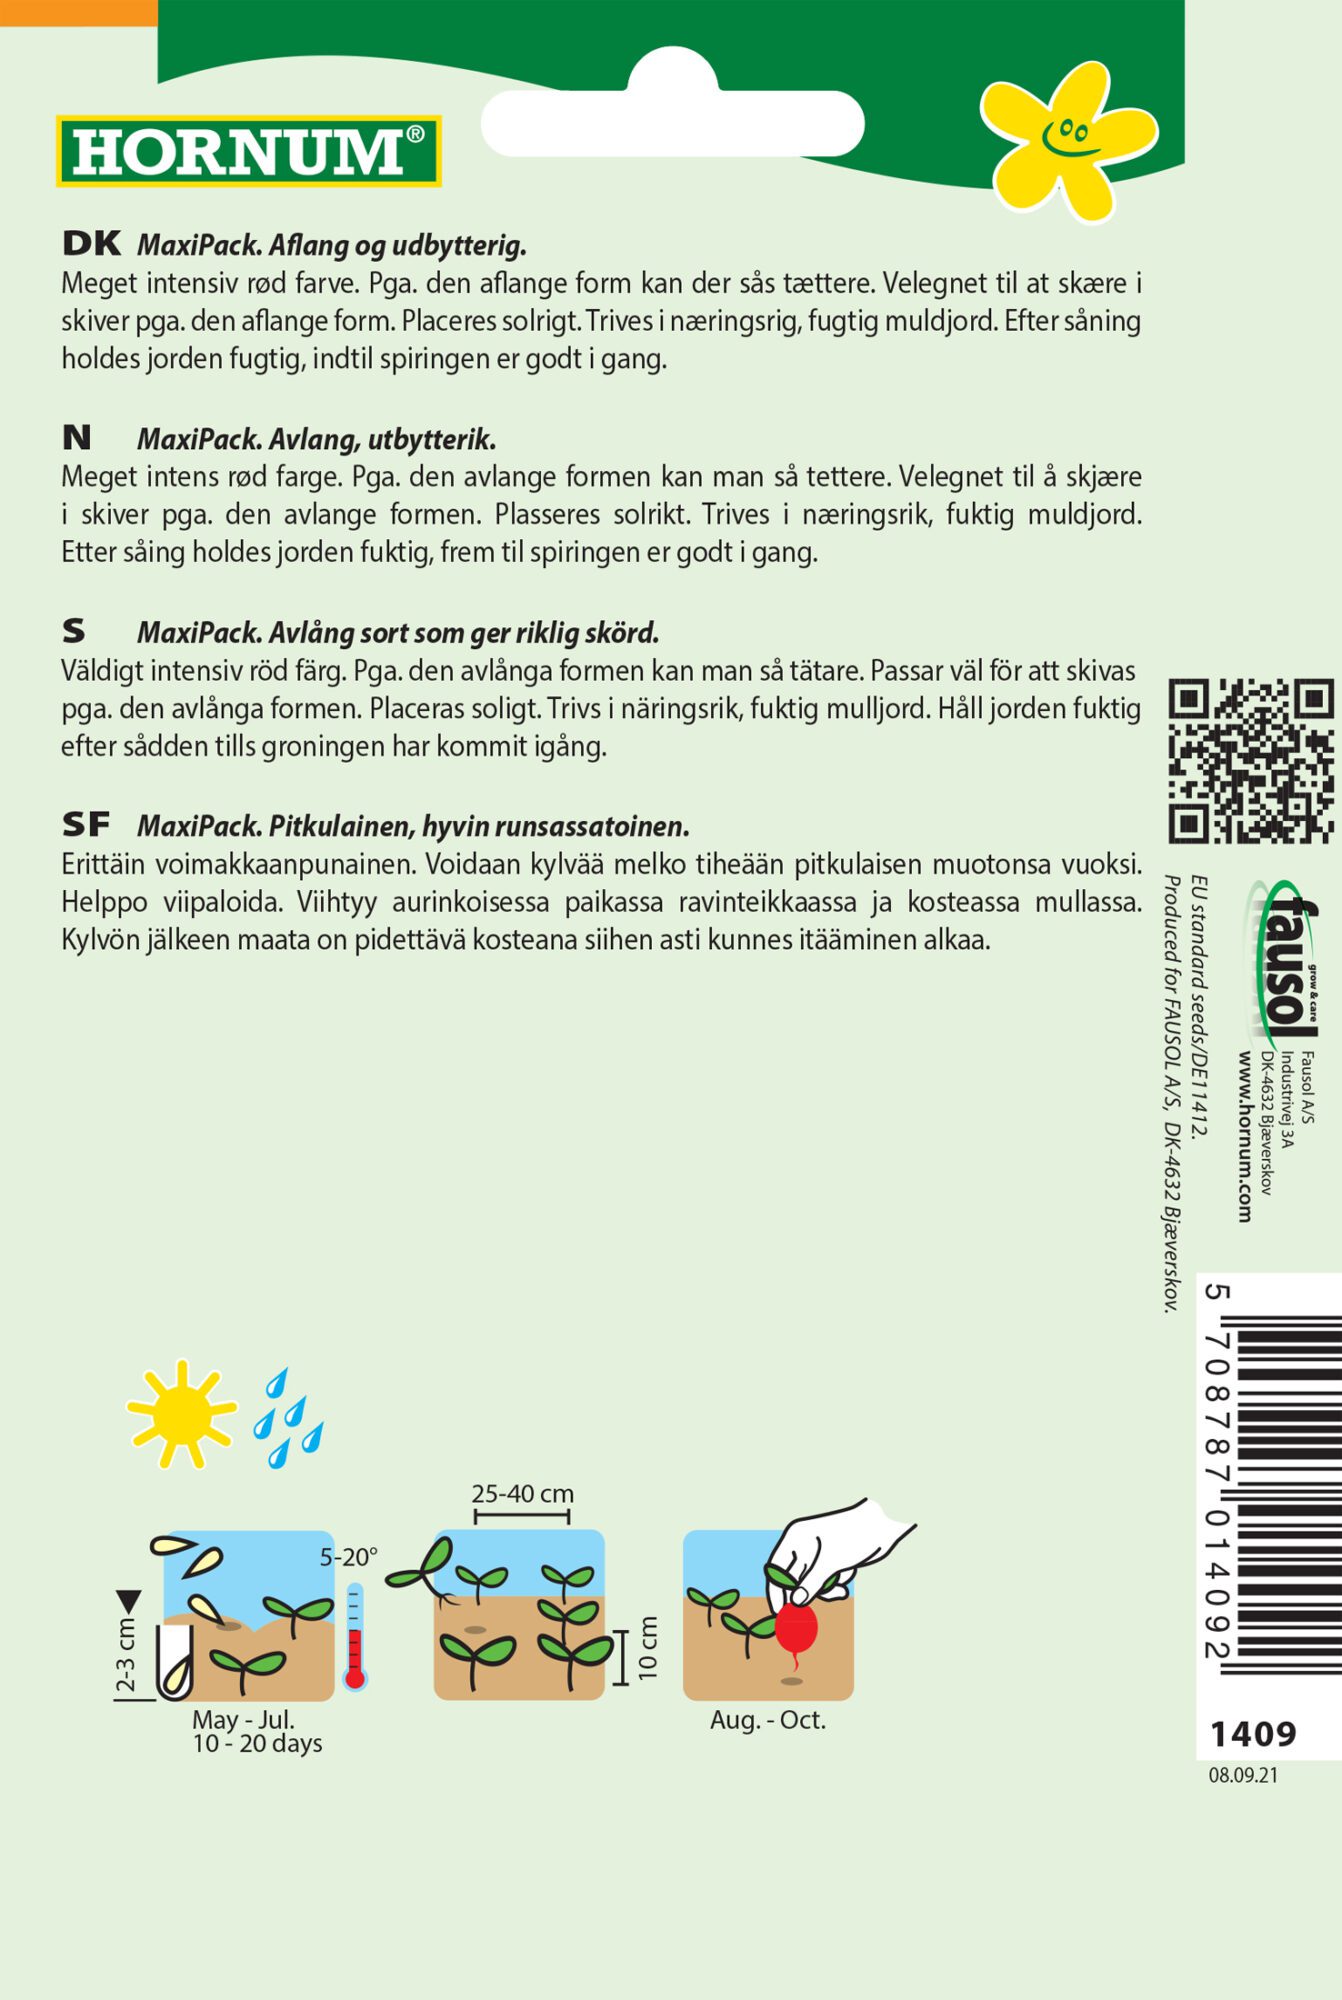 Rødbedefrø i Maxi pack – Aflang med stort udbytte – Grøntsagsfrø